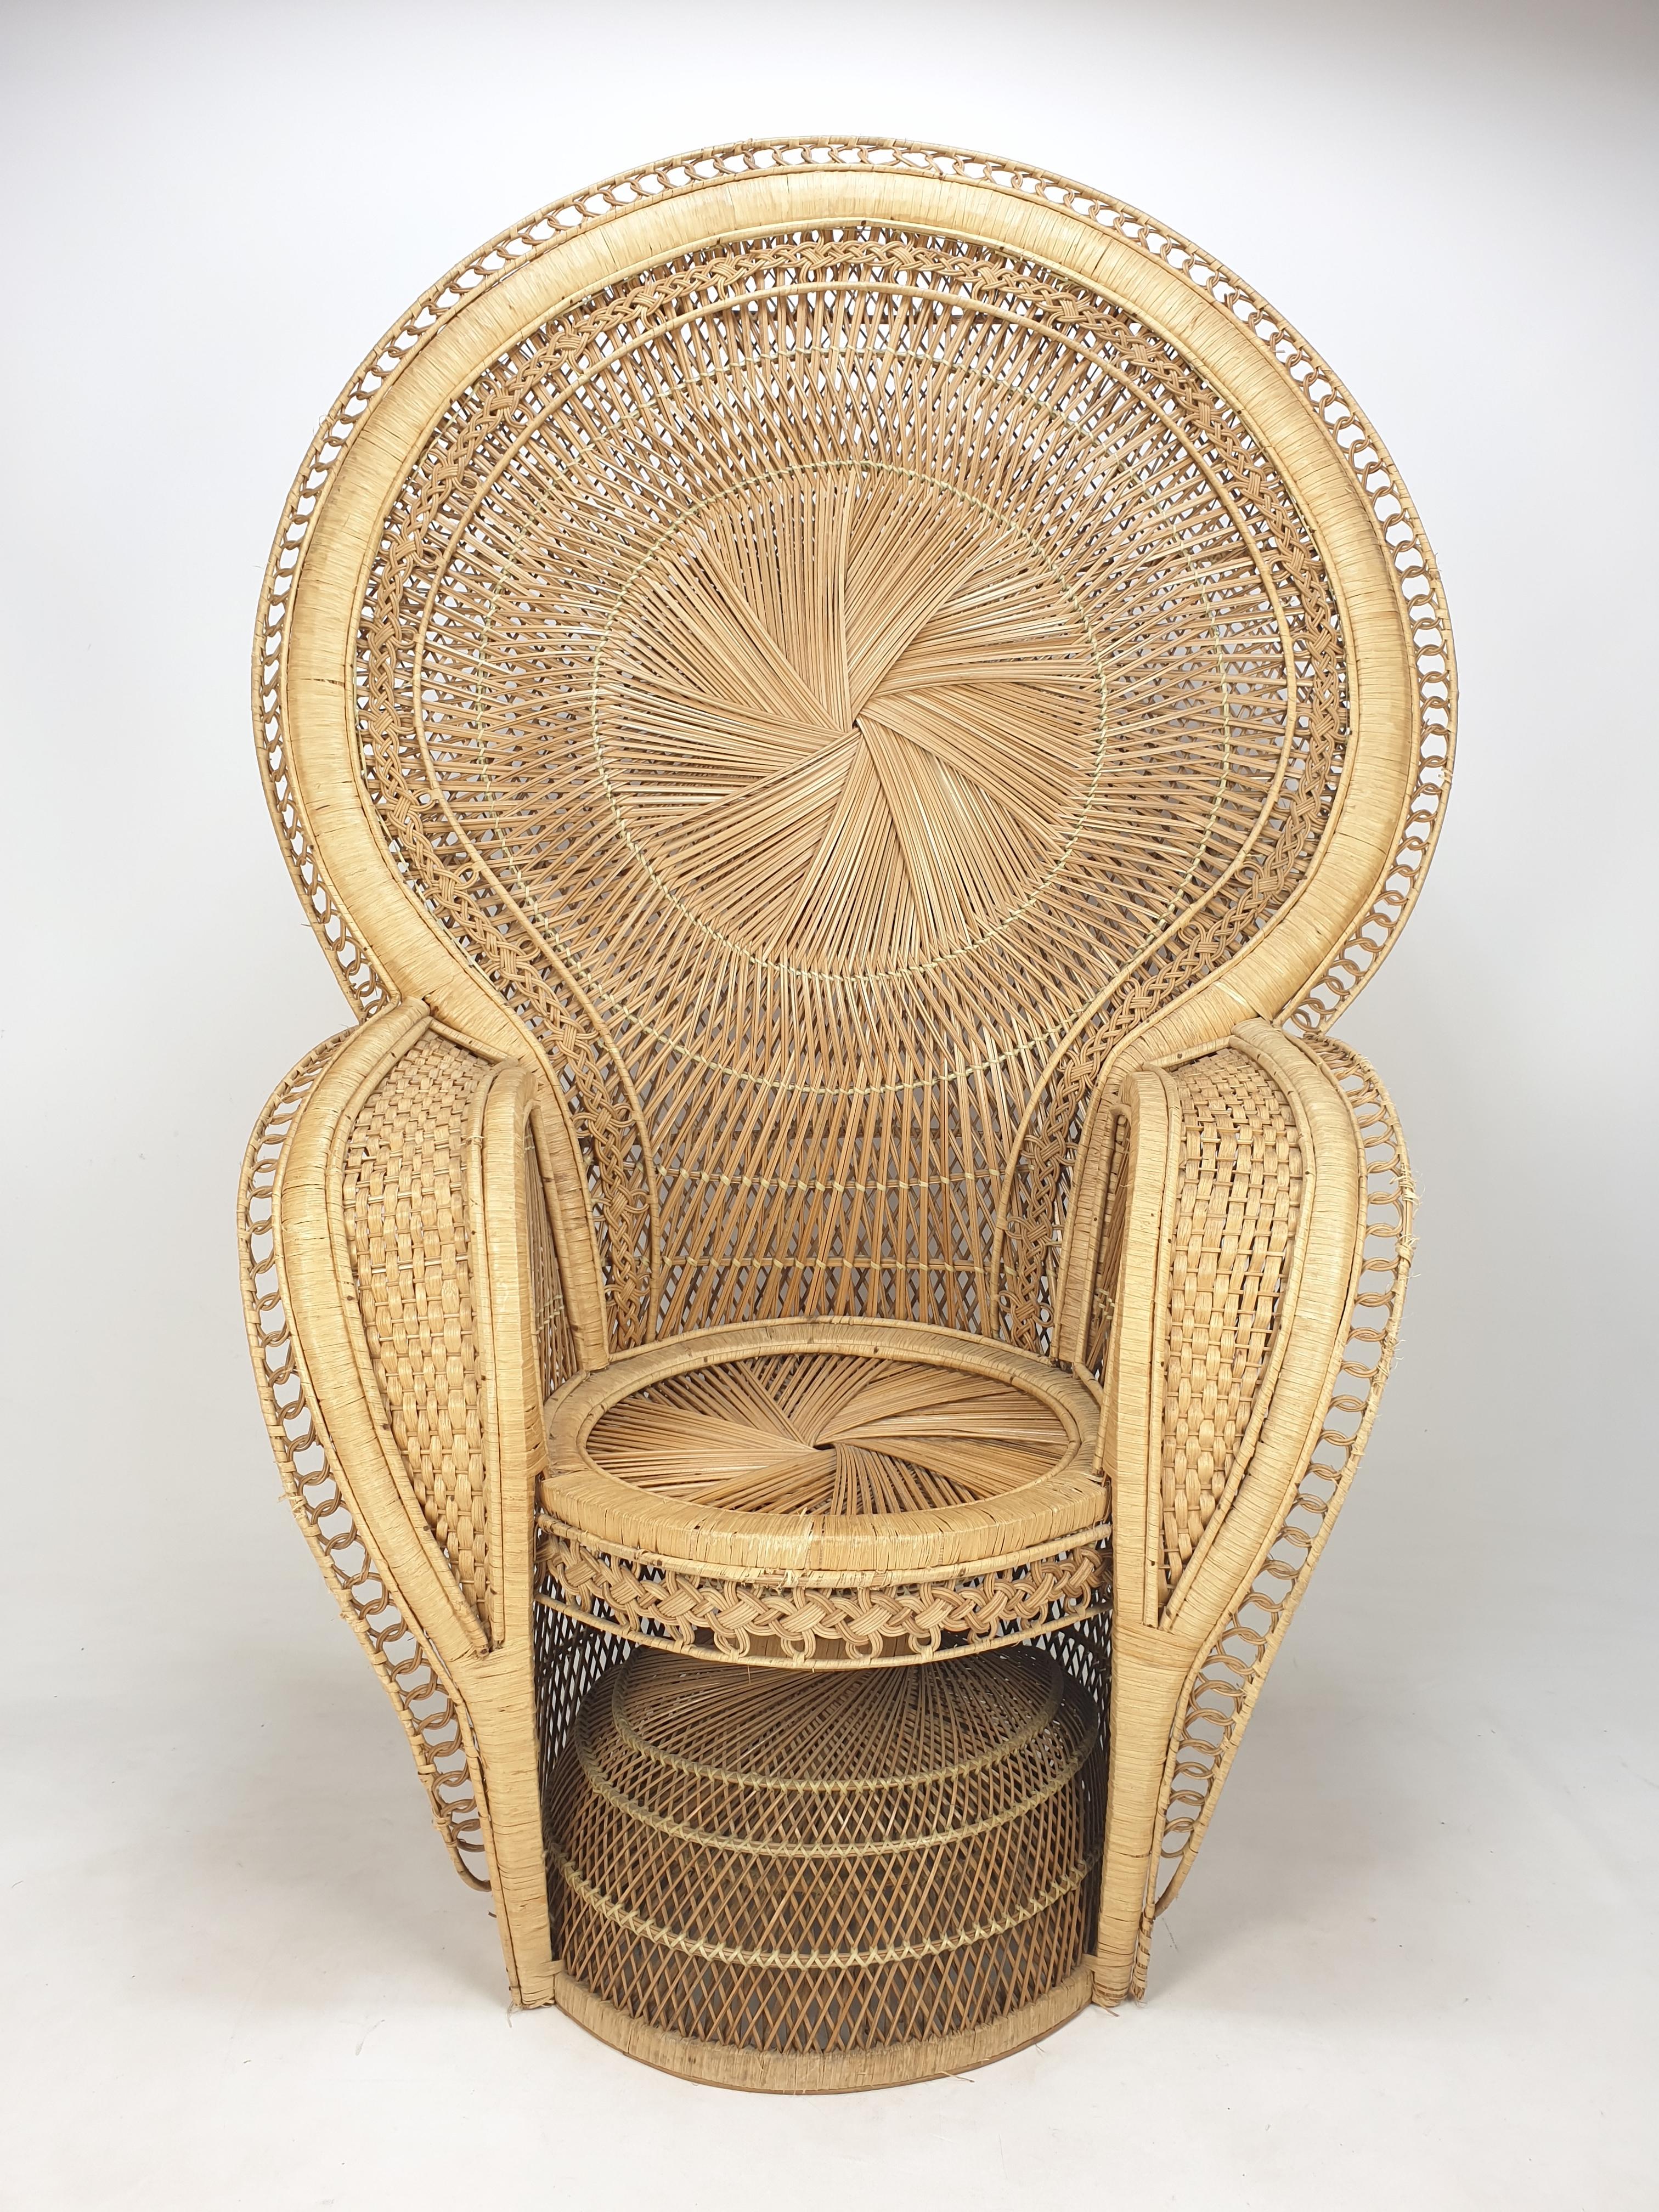 Très grande chaise Emmanuelle ou Peacock, fabriquée en Italie dans les années 60.
Une belle et rare version avec de très beaux détails.

Ce fauteuil tressé à la main est fait de rotin et d'osier.
Des formes très élégantes réalisées avec le plus